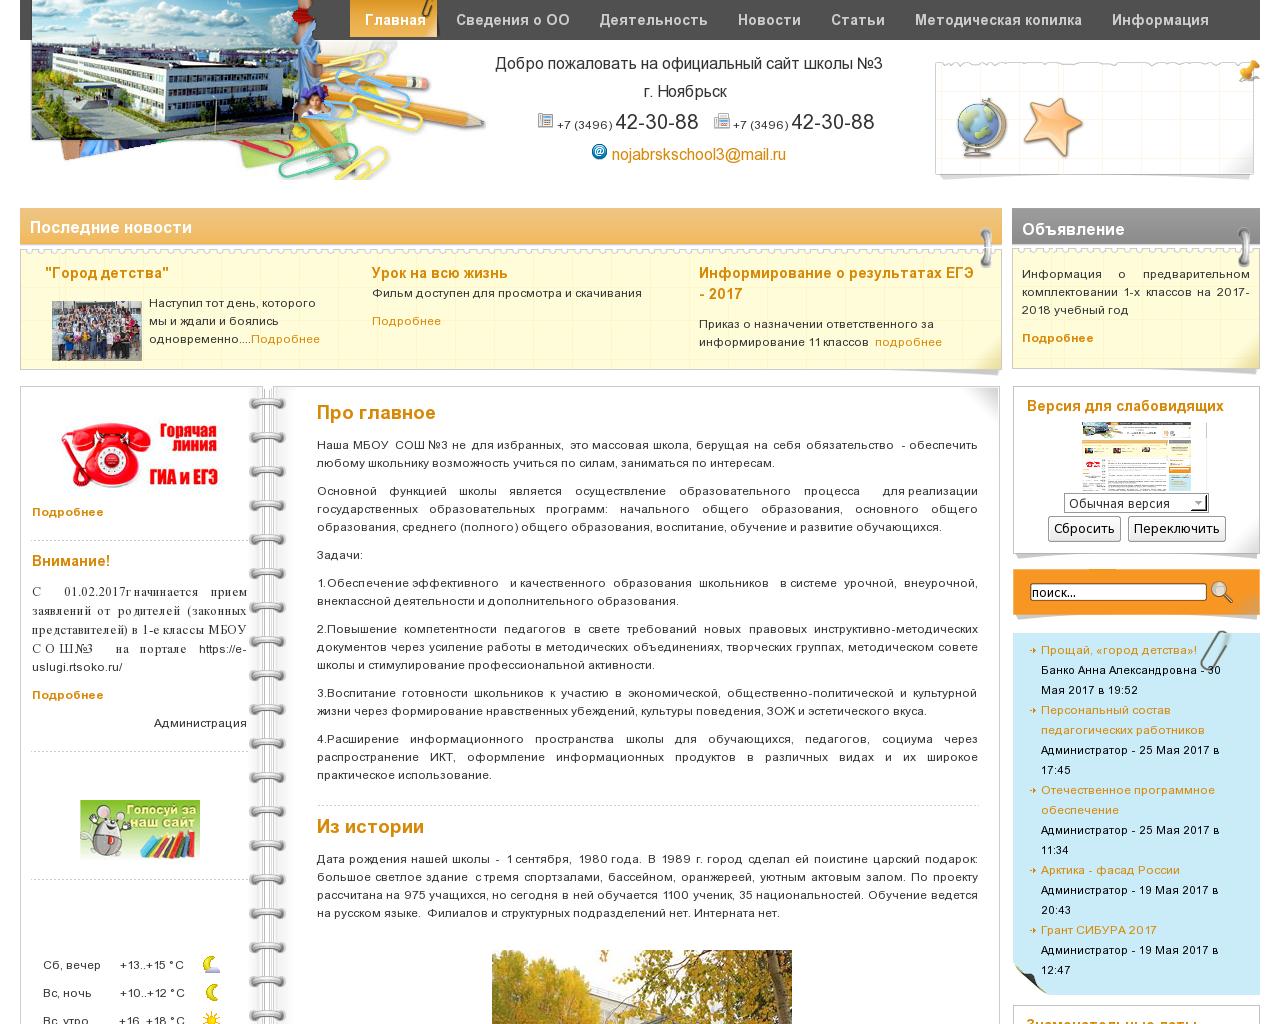 Изображение сайта school-3.ru в разрешении 1280x1024